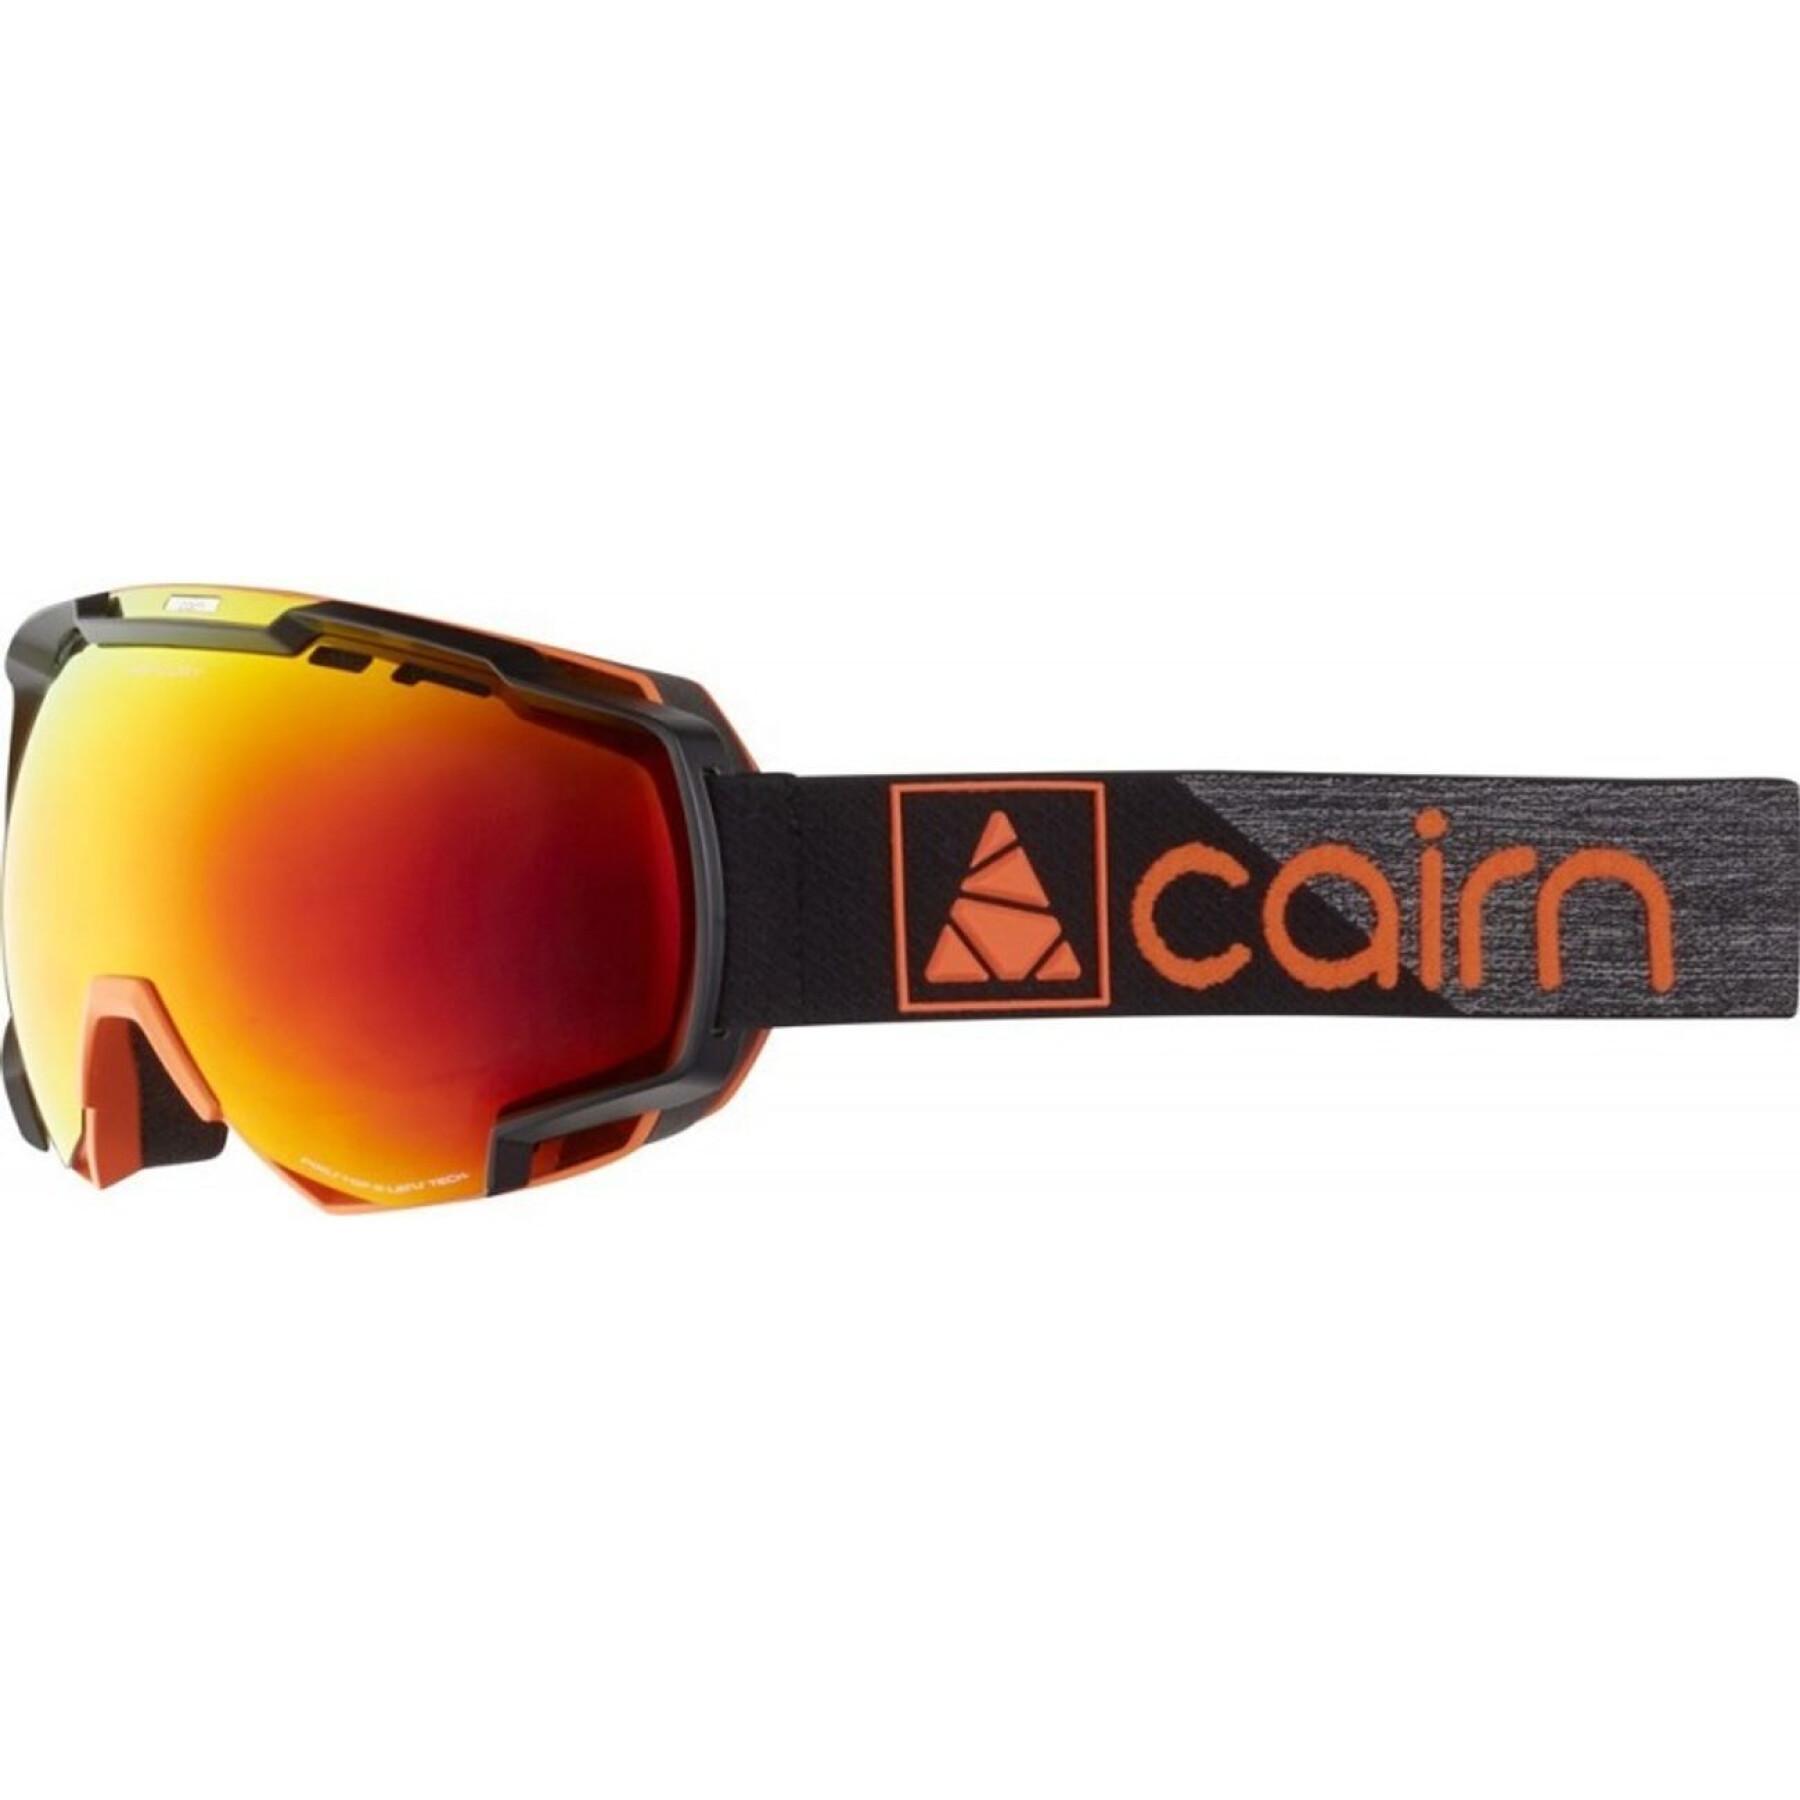 Ski mask Cairn Mercury SPX3000 [Ium]